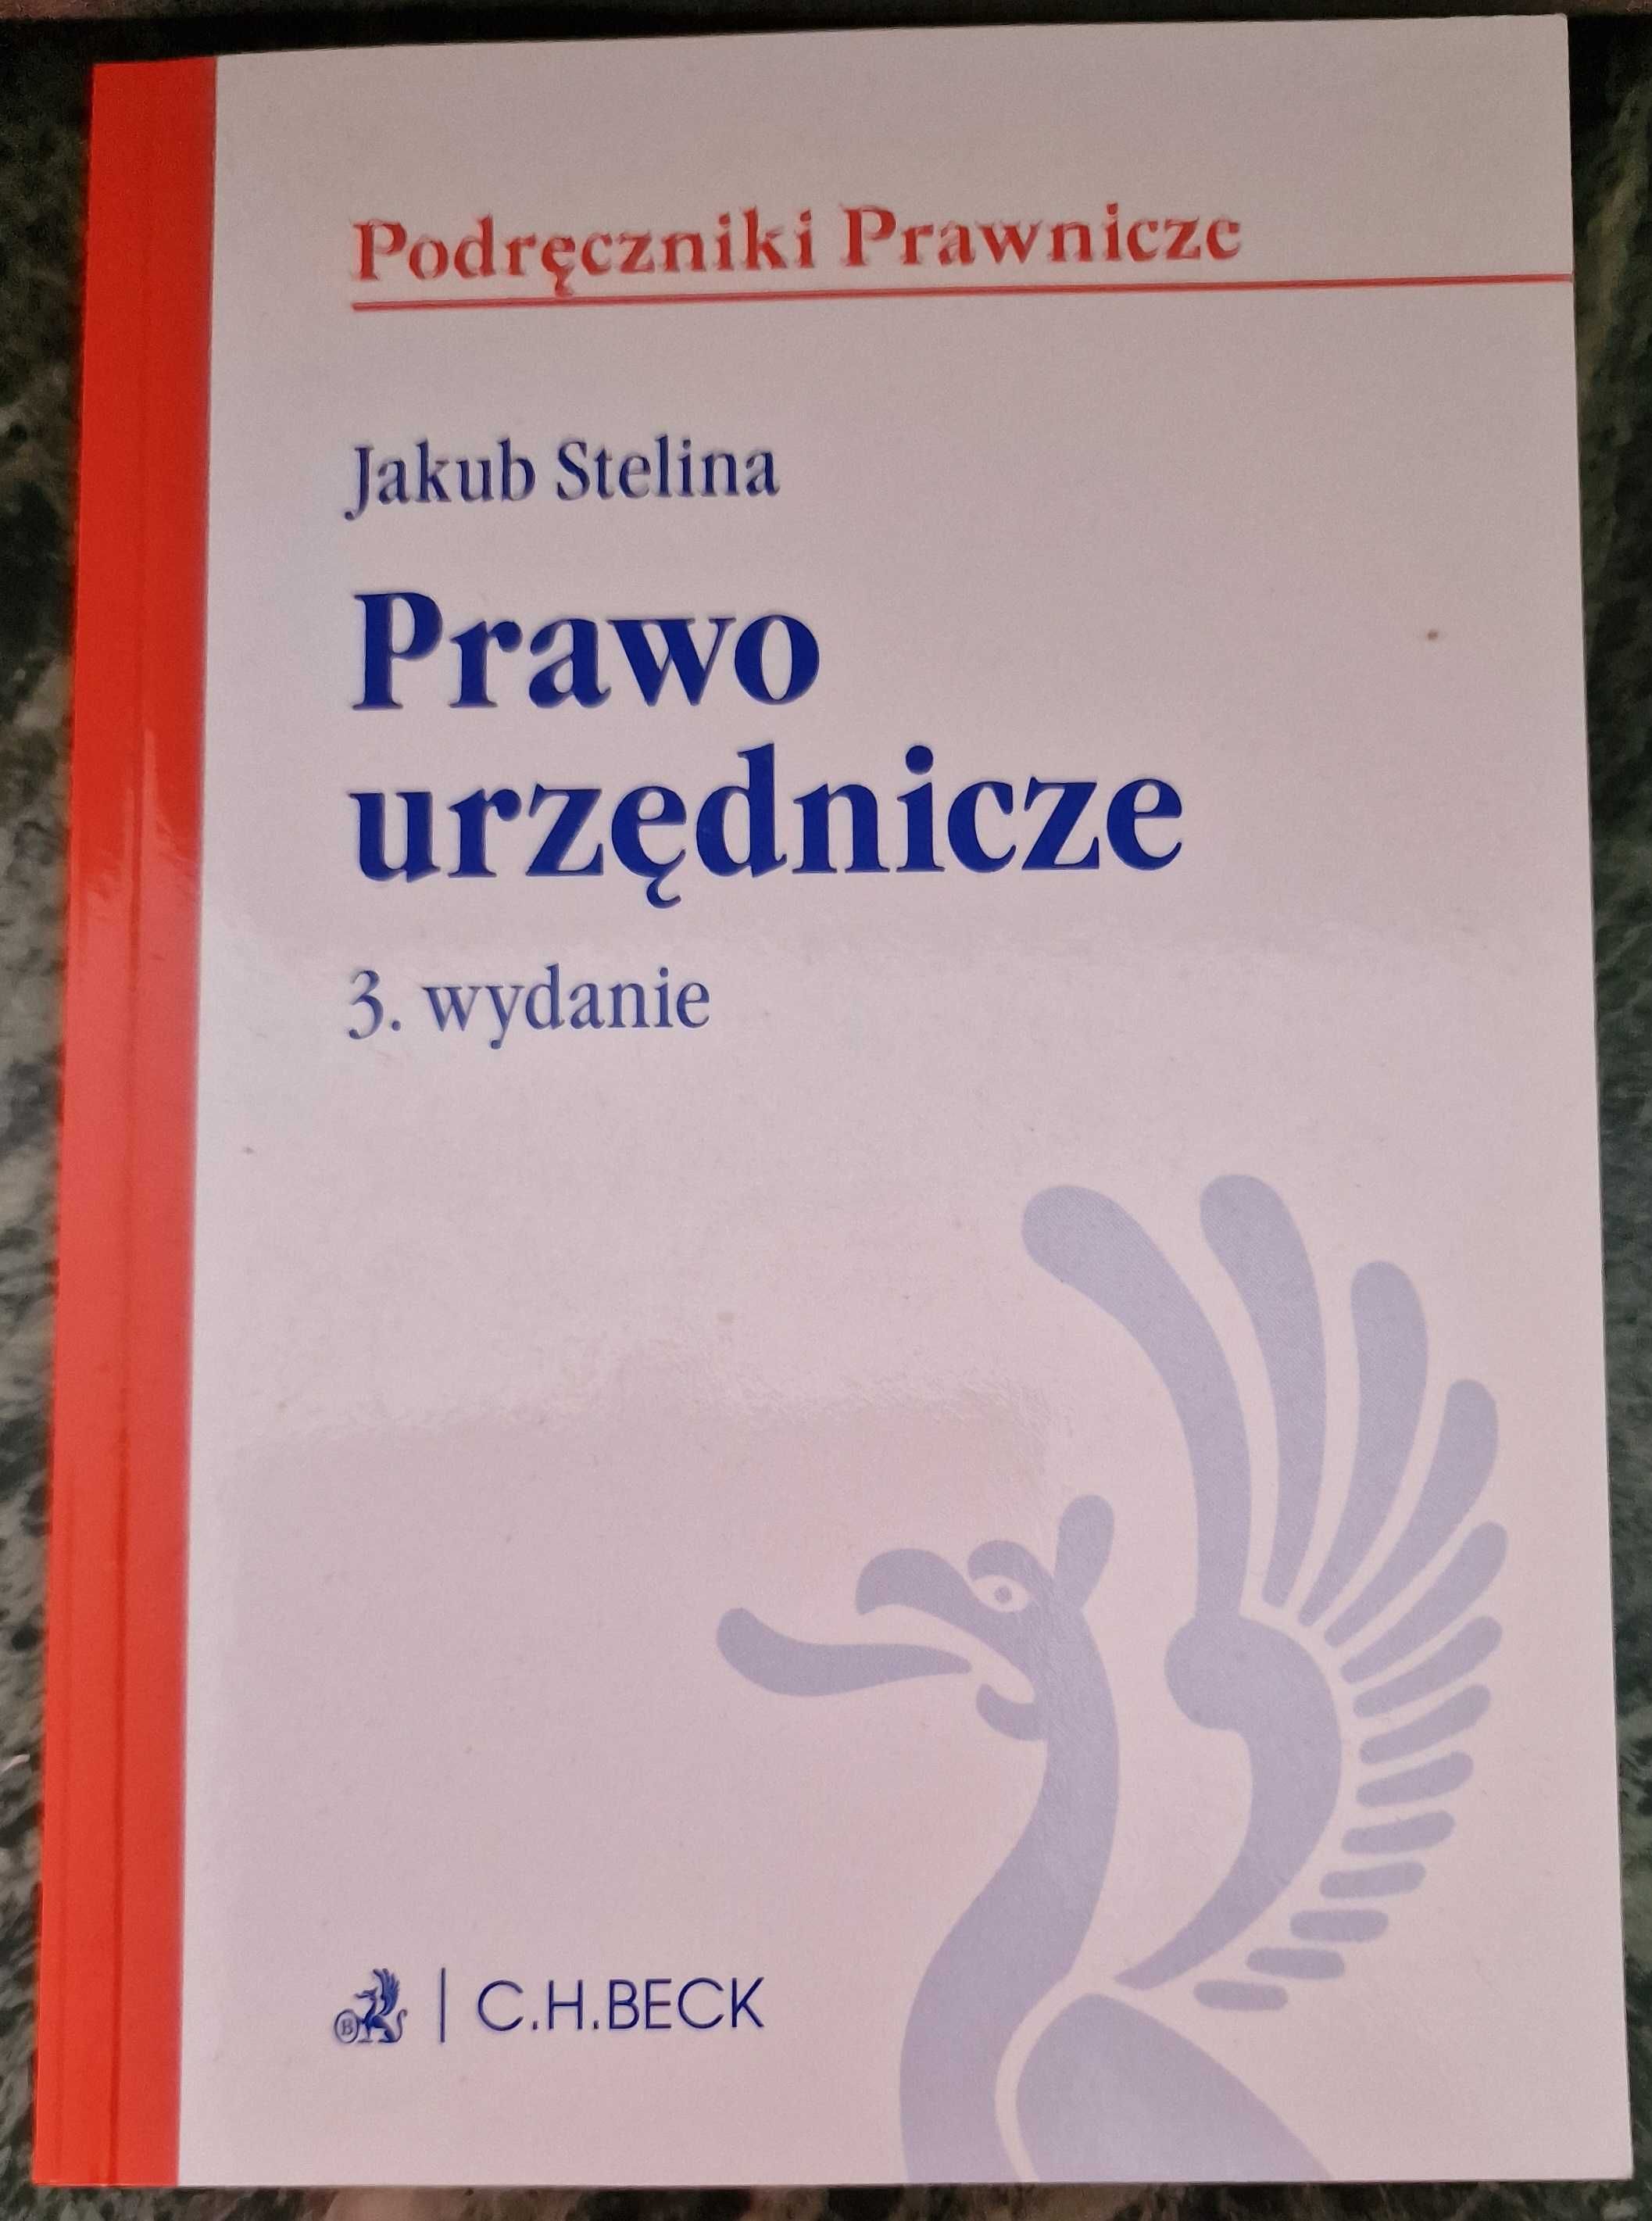 Prawo urzednicze / Jakub Stelina